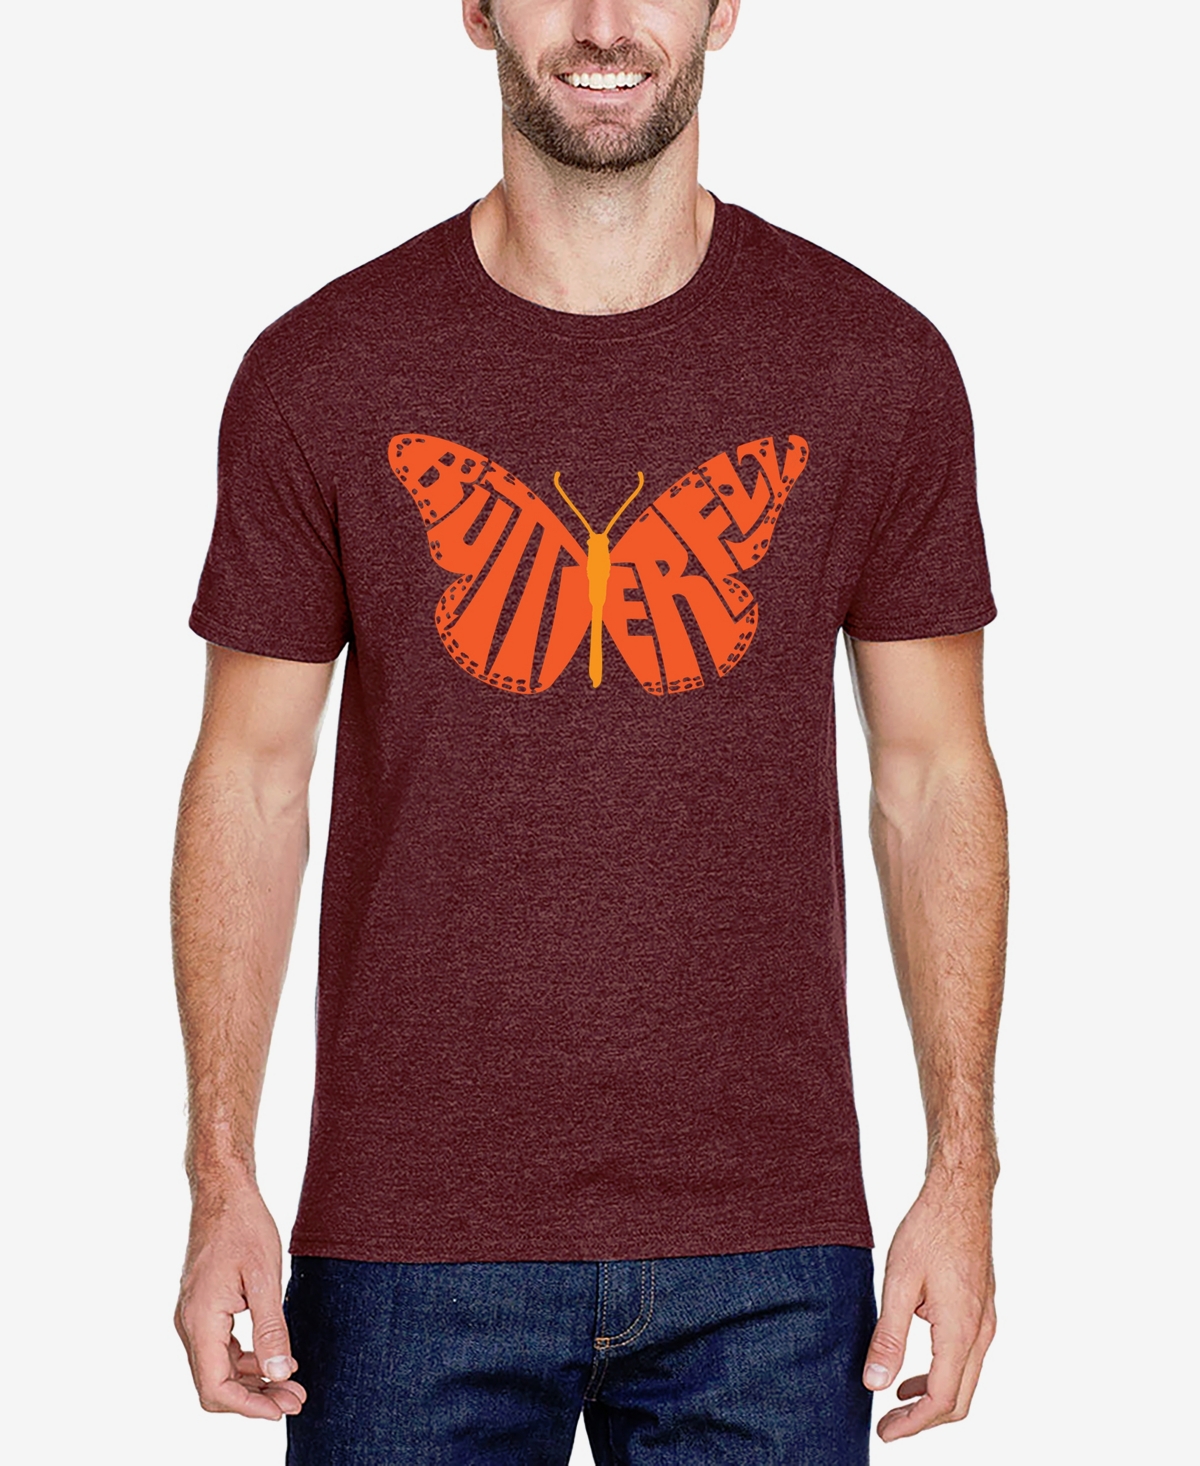 Butterfly - Men's Premium Blend Word Art T-Shirt - Burgundy